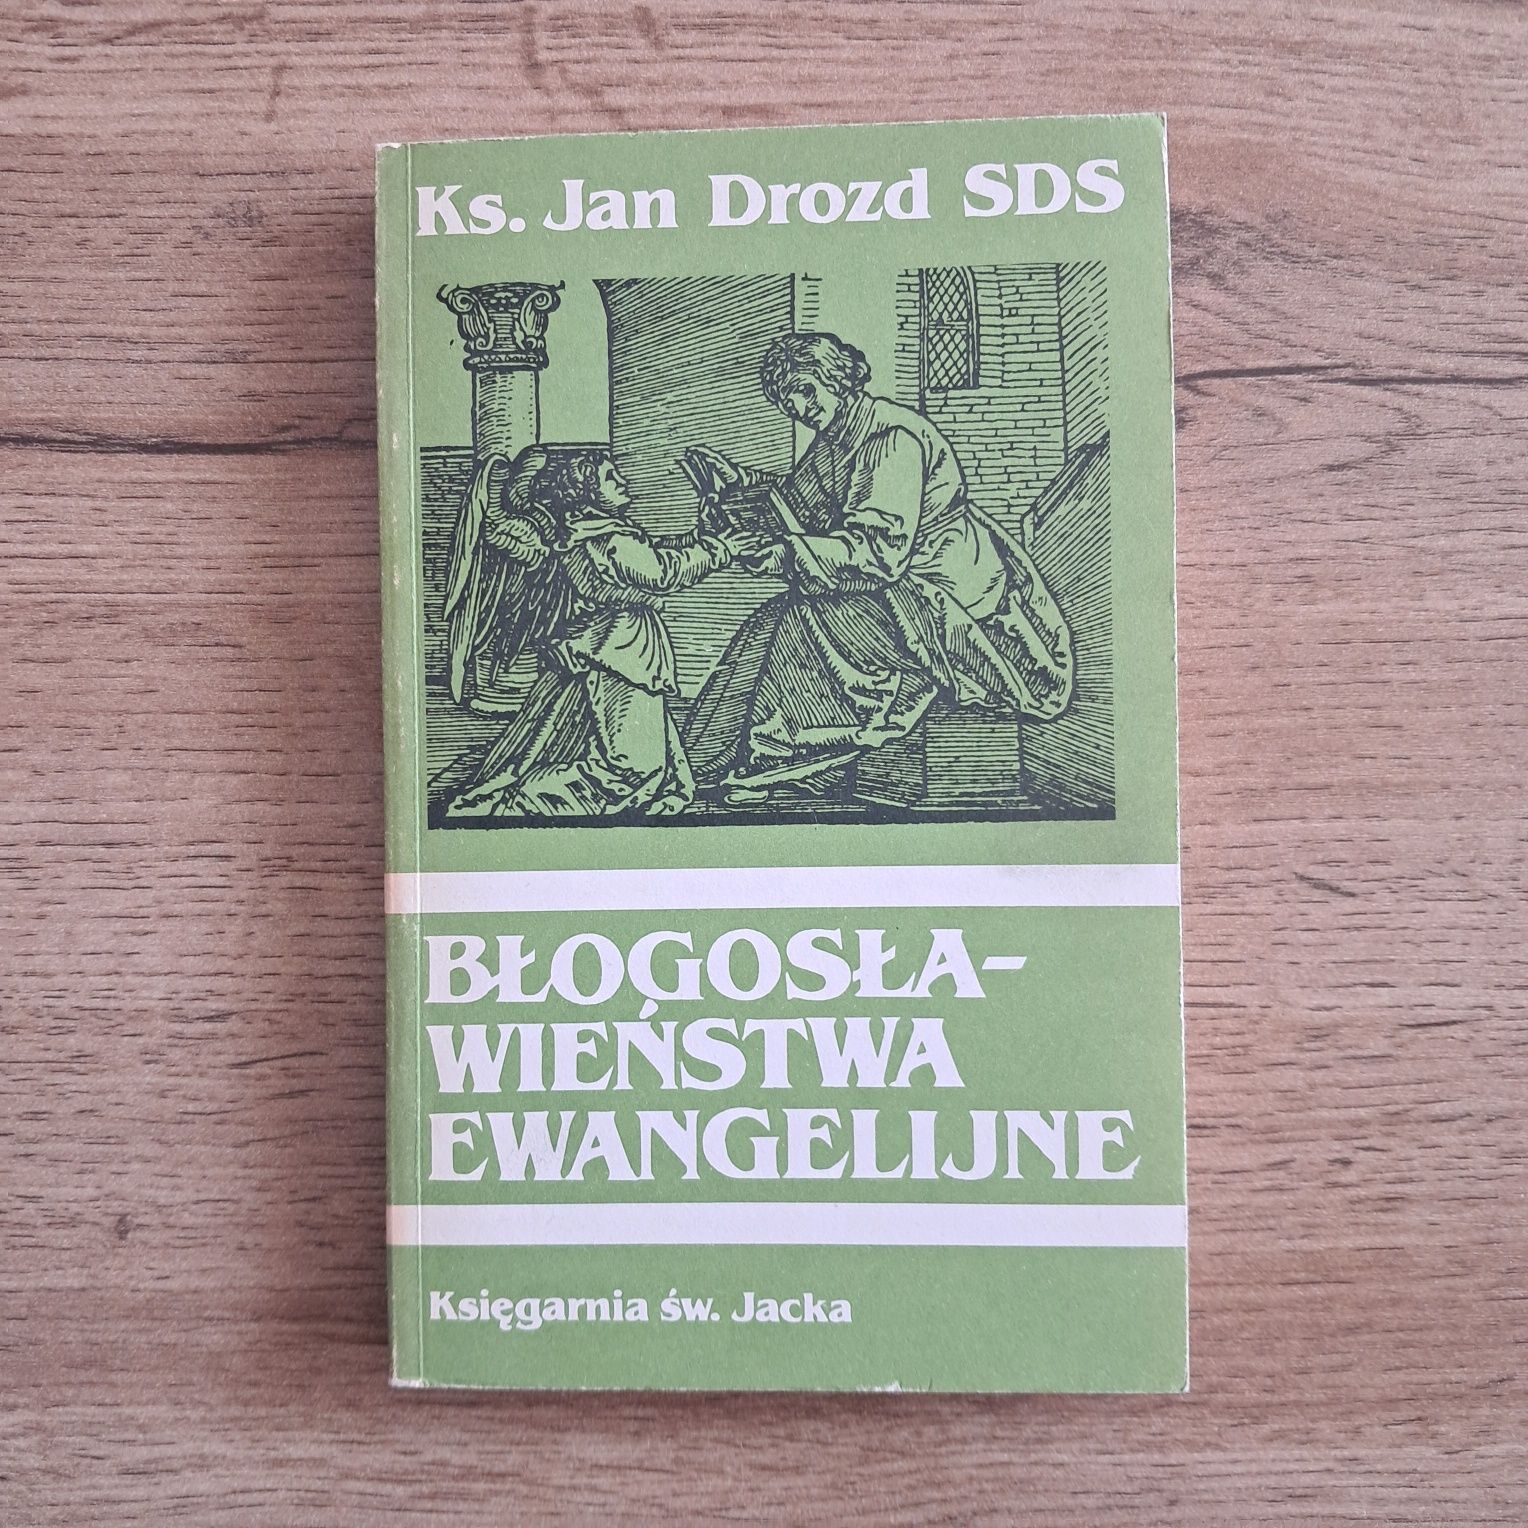 Błogosławieństwa ewangelijne - ks. Jan Drozd SDS